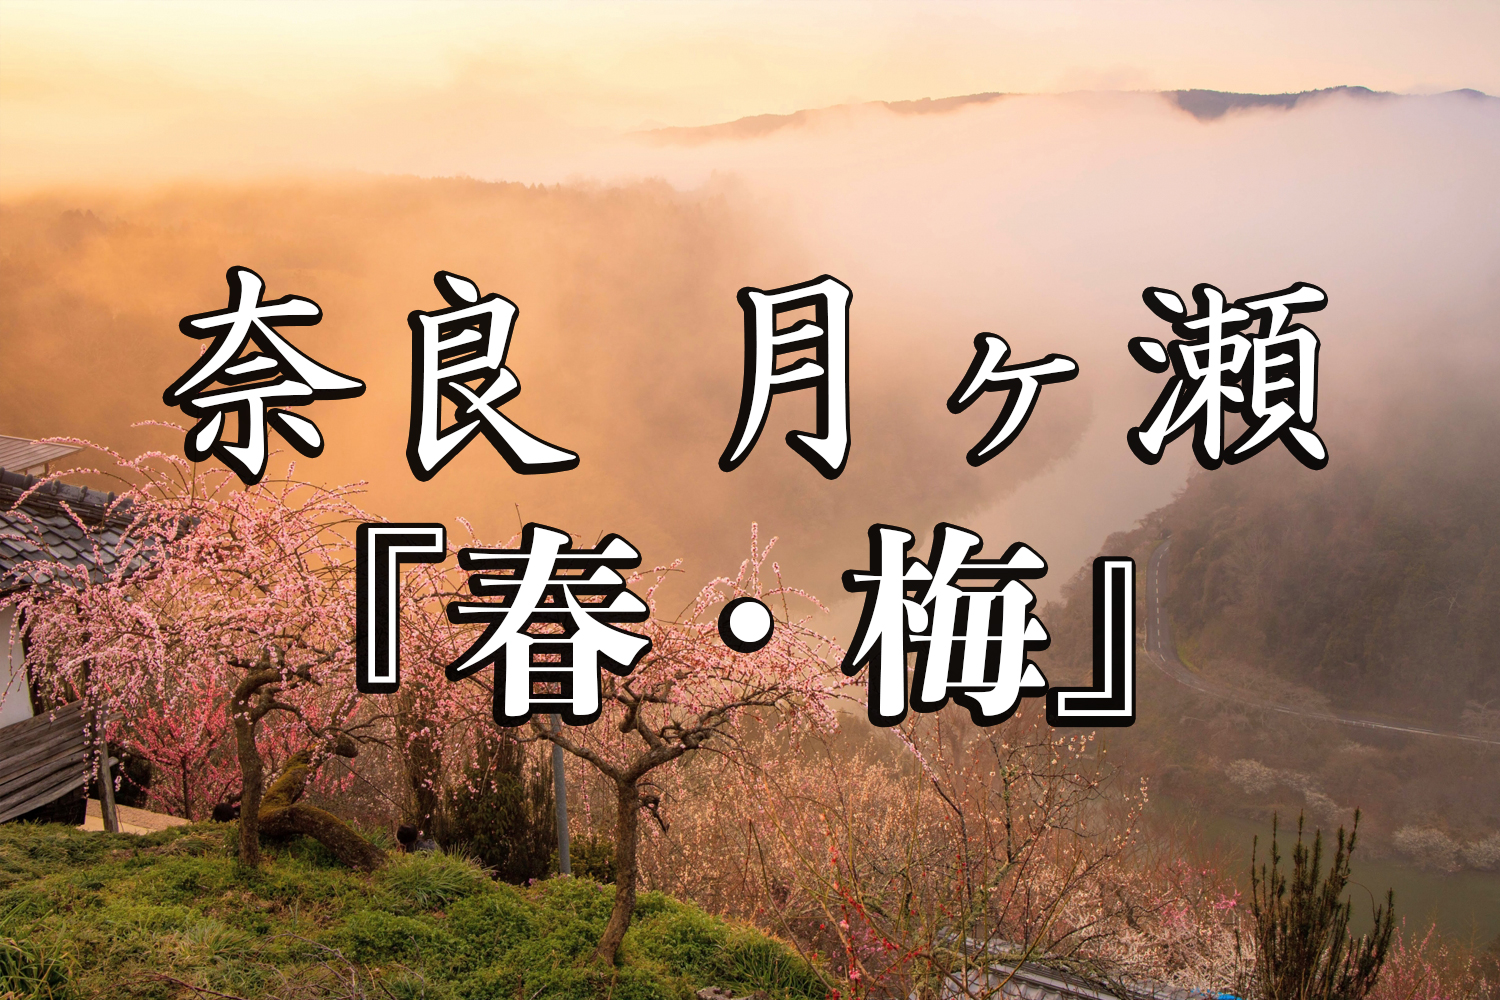 奈良県 月ヶ瀬梅林 約1万本の梅が咲く春におすすめの絶景スポット 雲海も見所 写真の紹介 アクセス情報や駐車場情報など 写真や映像で紹介する関西 近畿の絶景カメラ 観光スポット